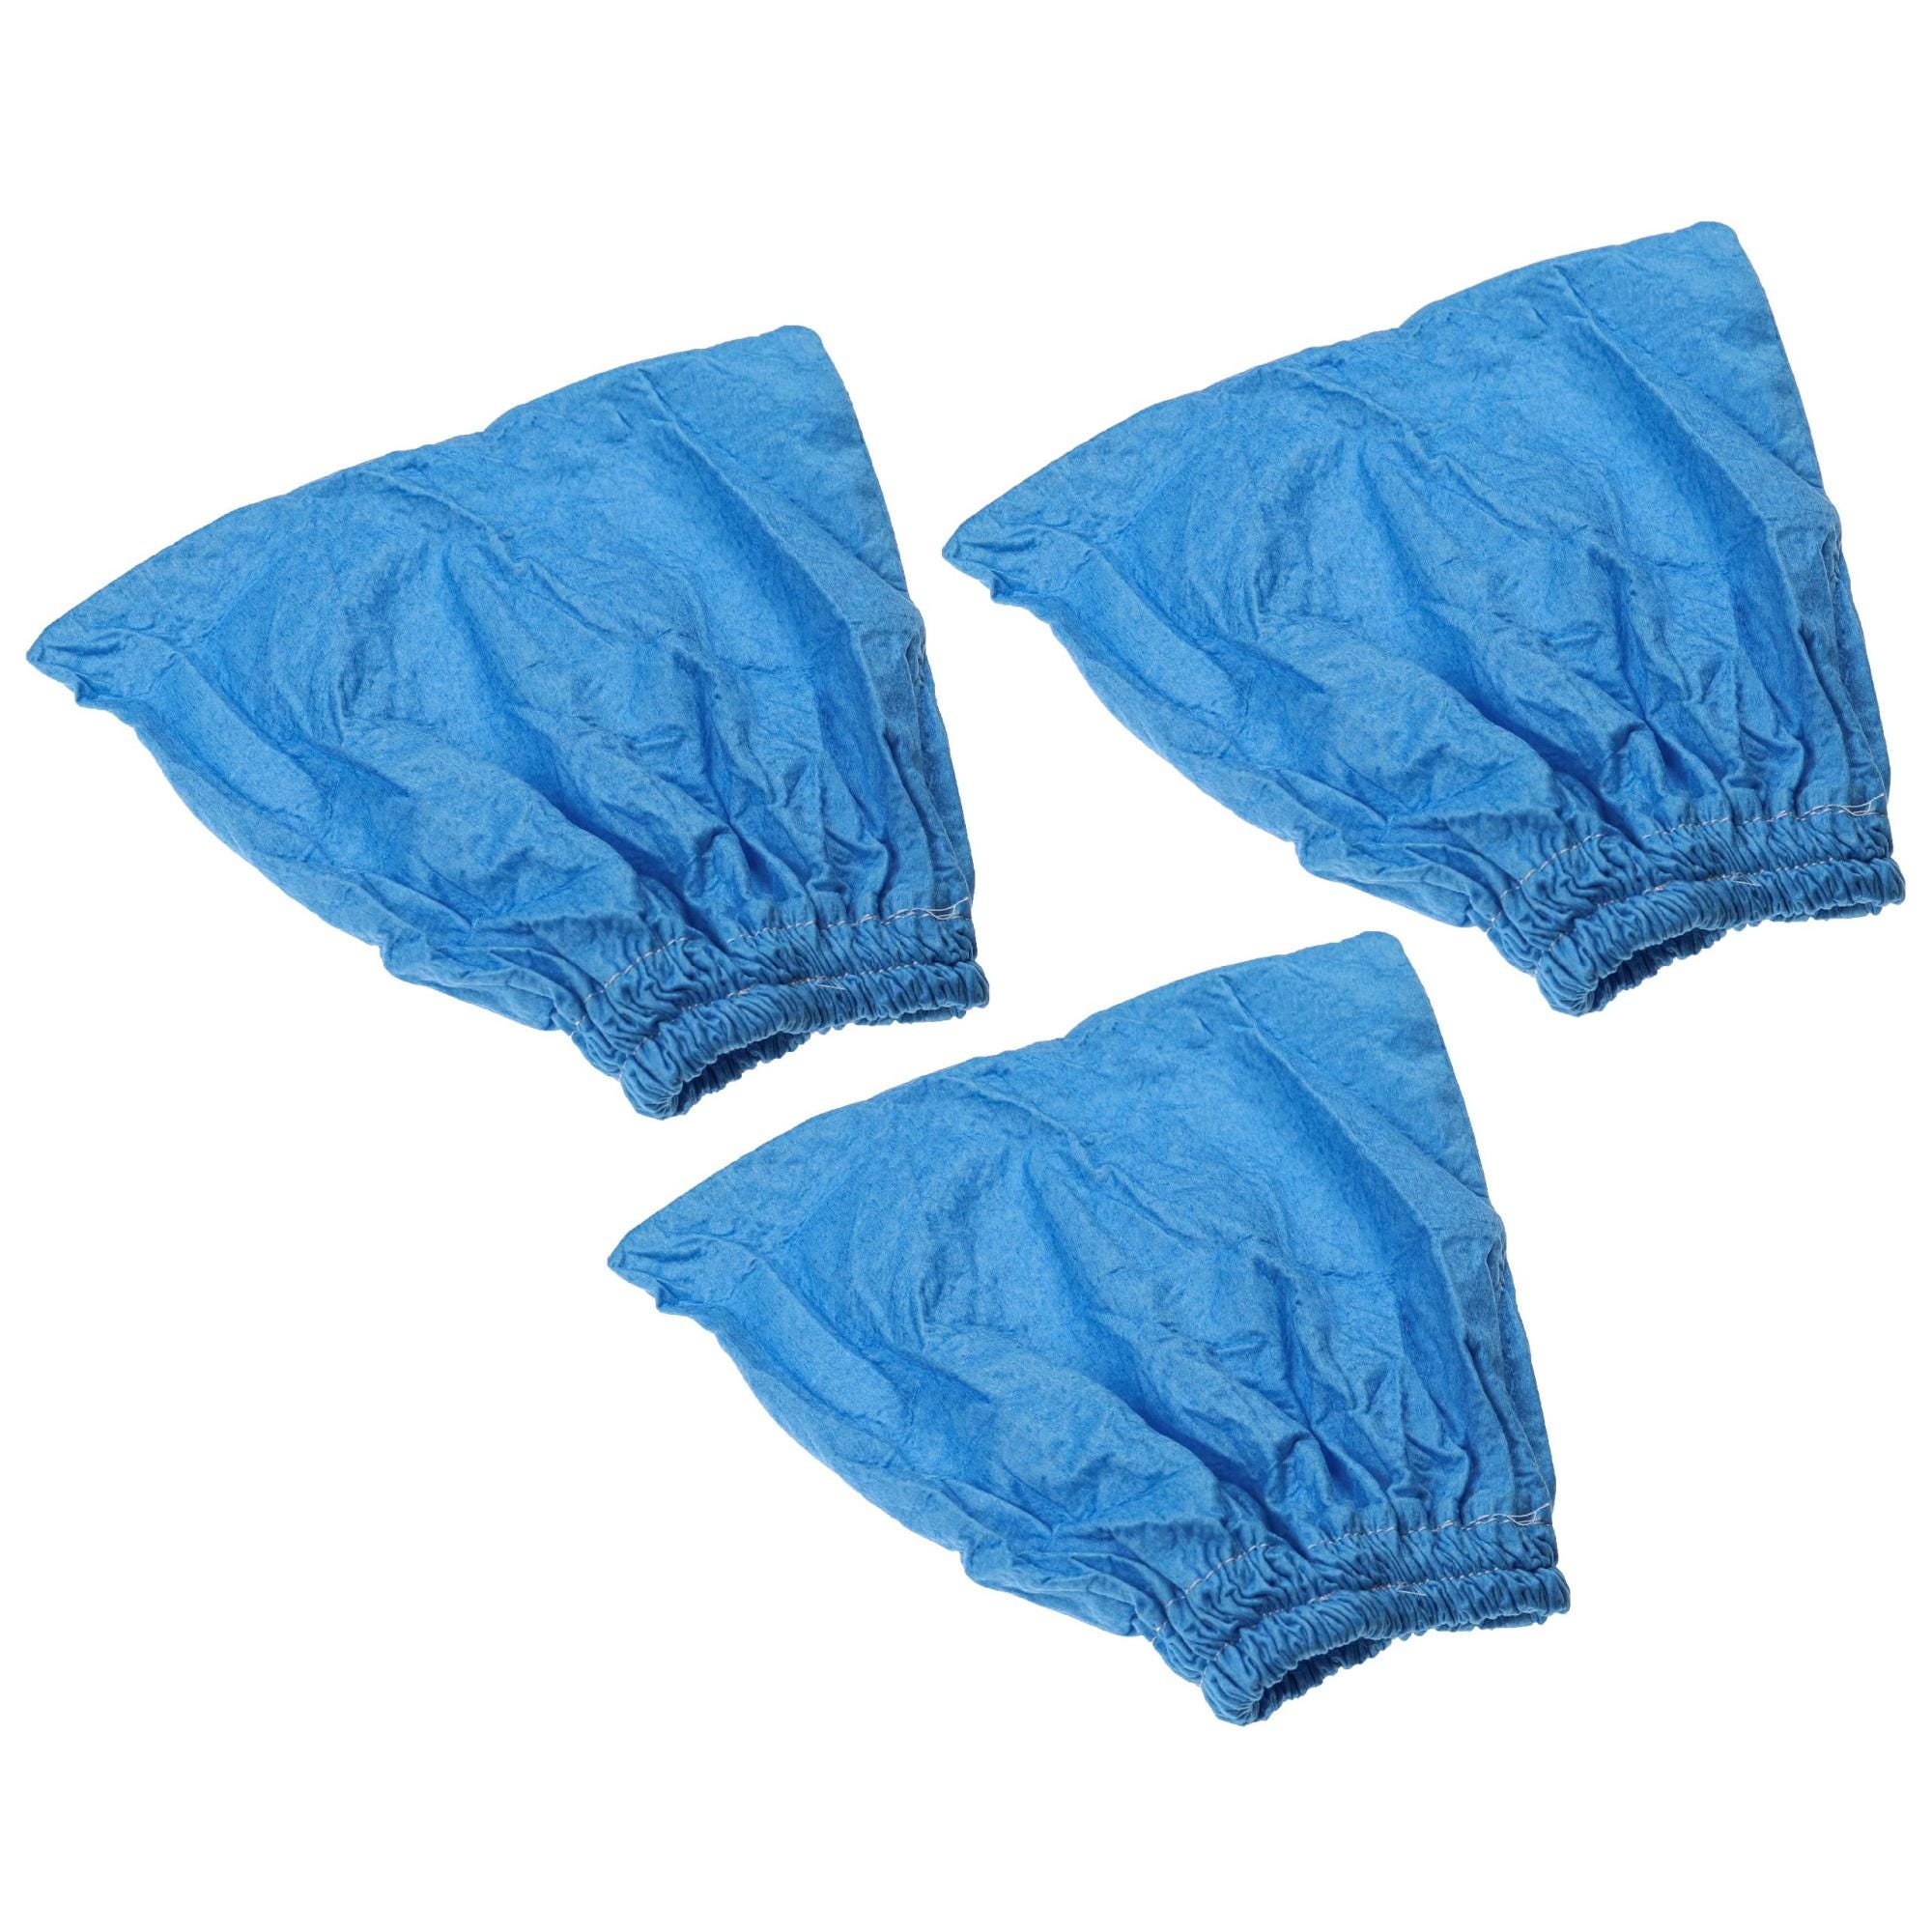 Vhbw 3x filtro in tessuto compatibile con Lidl / Parkside PNTS 1500 B3  aspirapolvere, aspiratore a secco/umido - Sacchetto in tessuto, lavabile  blu